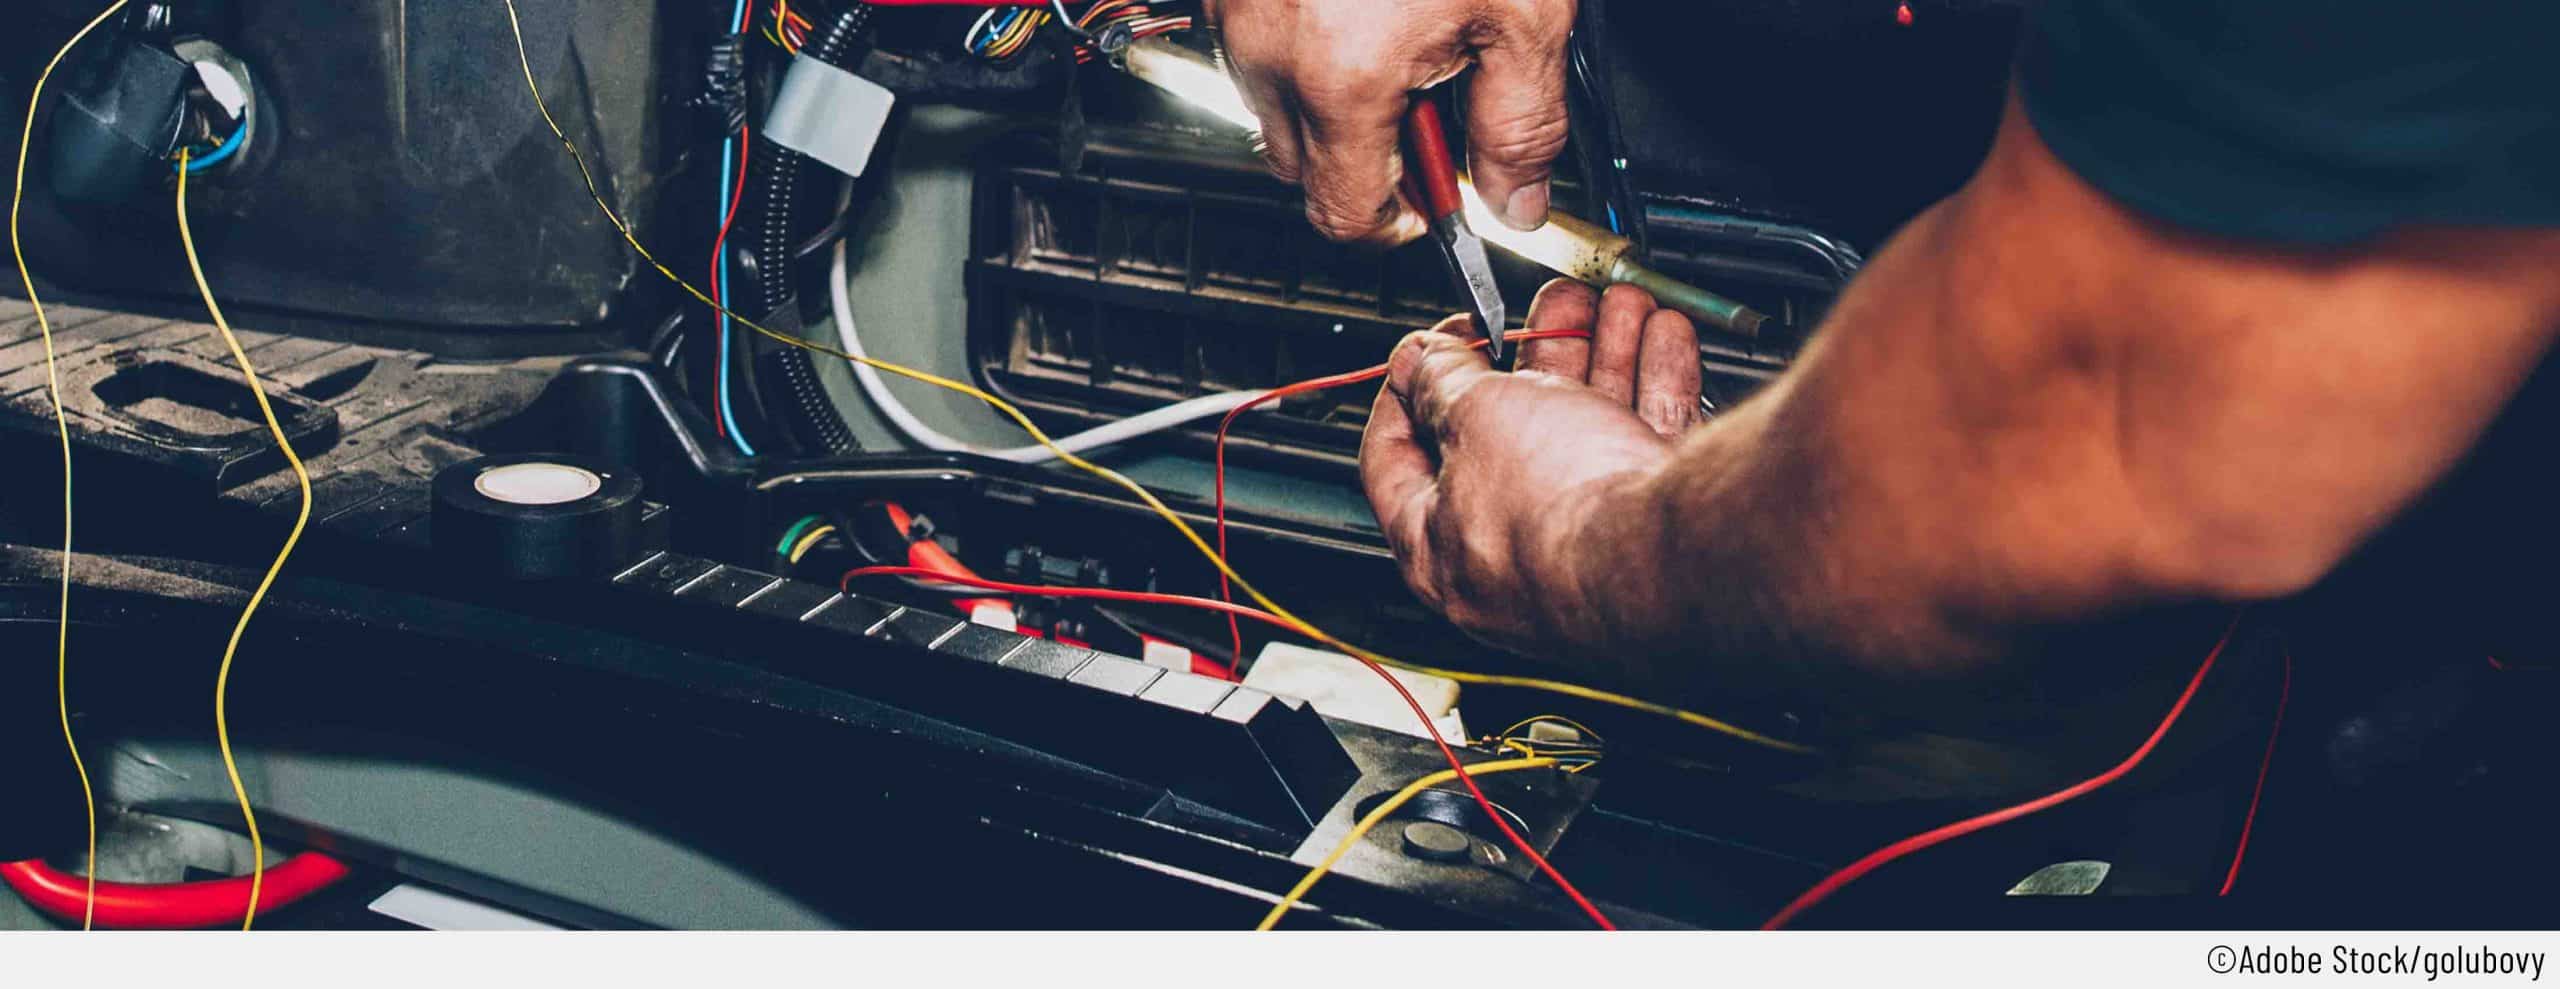 Ein Mechnaiker, repariert den Kabelbruch an einem Auto. Mit einer Kabelschere schneidet er das defekte Kabel, um eine Kabelbaum-Reparatur durchführne zu können.